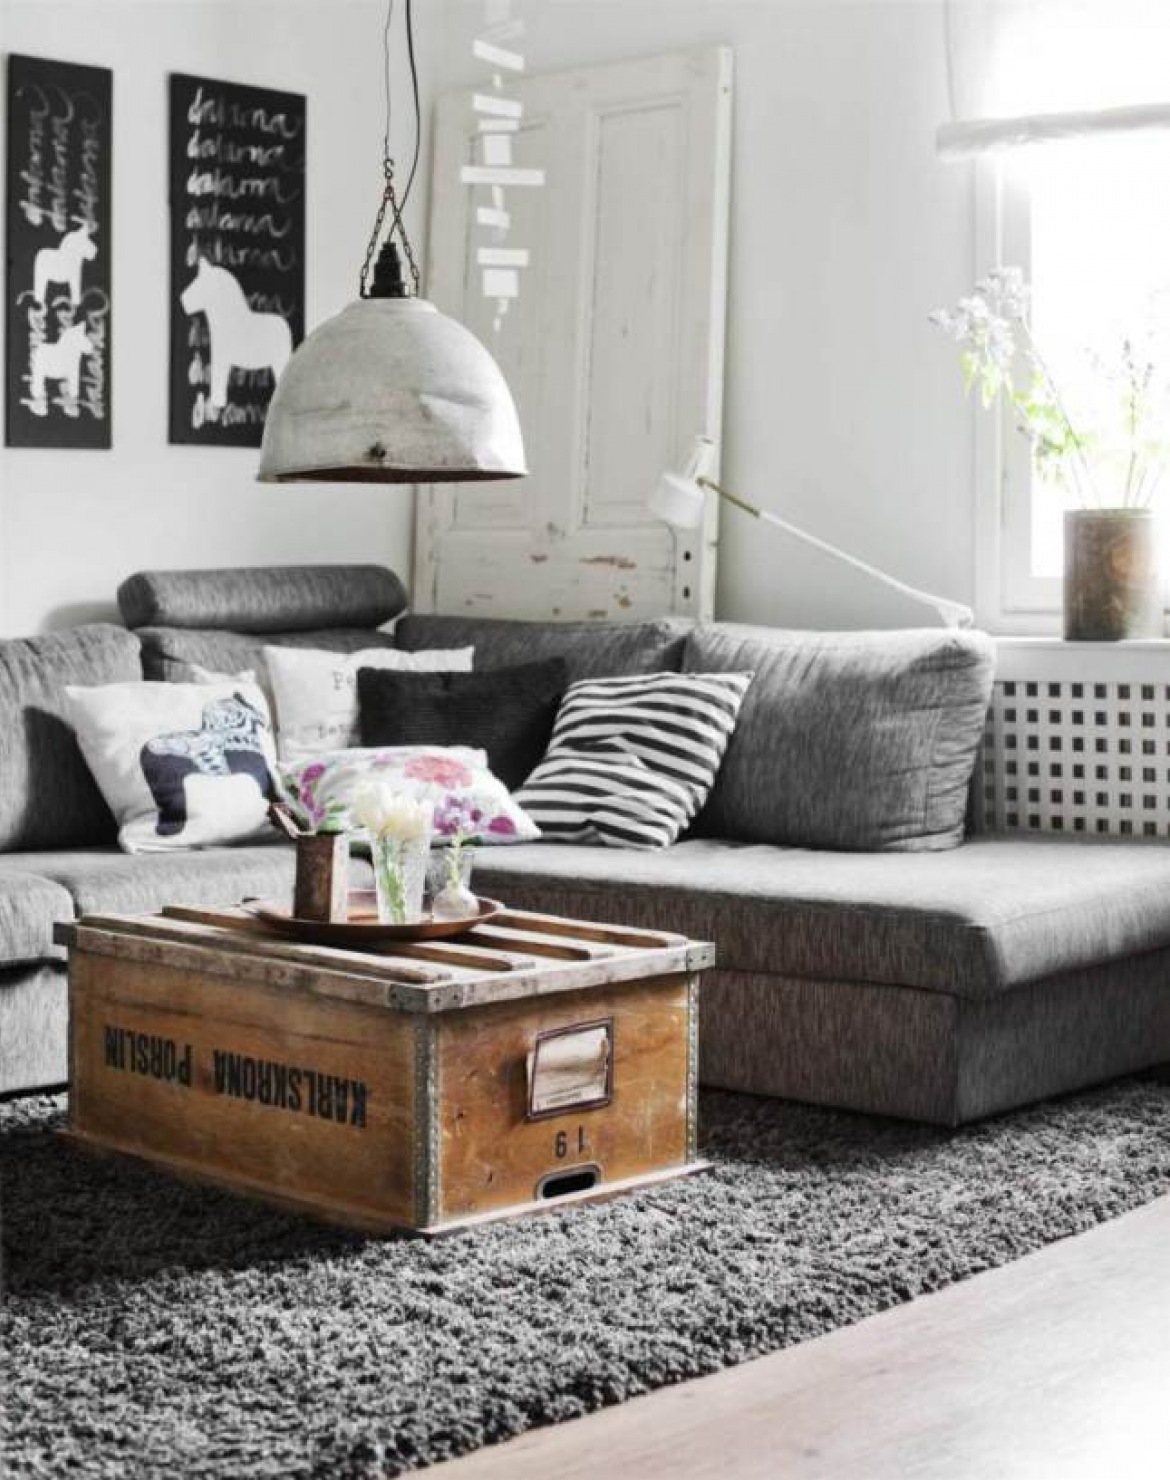 Drewniana skrzynia w roli stolika w aranżacji skandynawskiego salonu z szarą sofą, białą lampa industrialną i biało-czarnymi dekoracjami (28235)